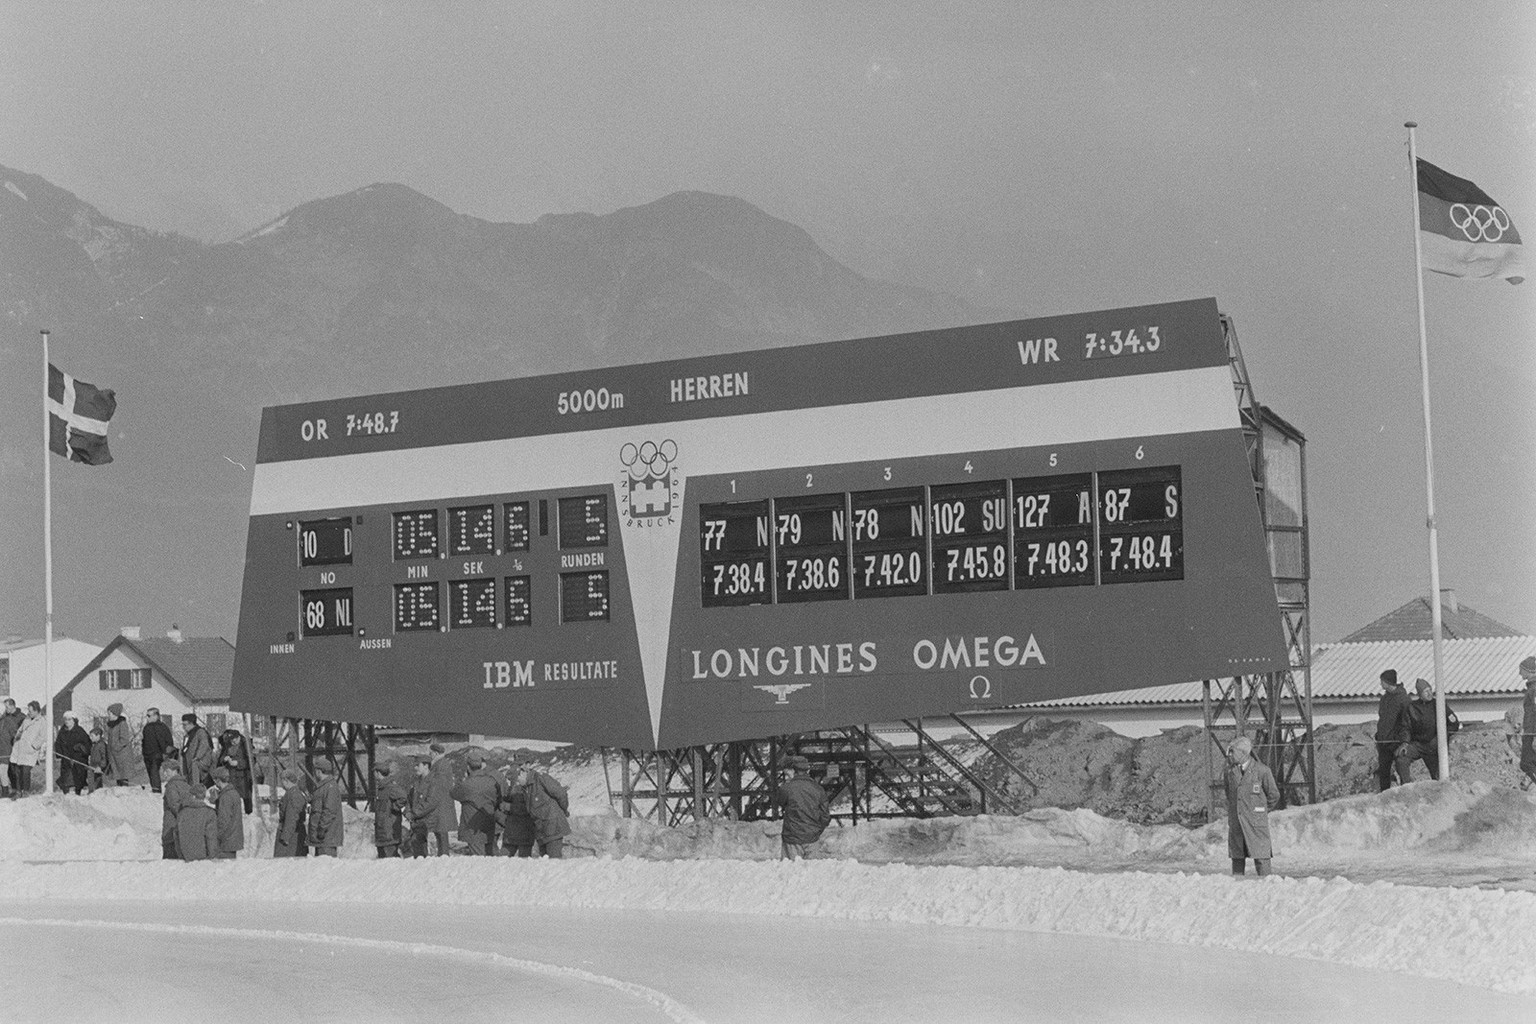 Zeitanzeige bei den Eisschnelllauf-Wettbewerben bei den Spielen in Innsbruck 1964 mit den Marken-Logos von Longines und Omega. https://foto.digitalarkivet.no/fotoweb/archives/5001-Historiske-foto/Inde ...